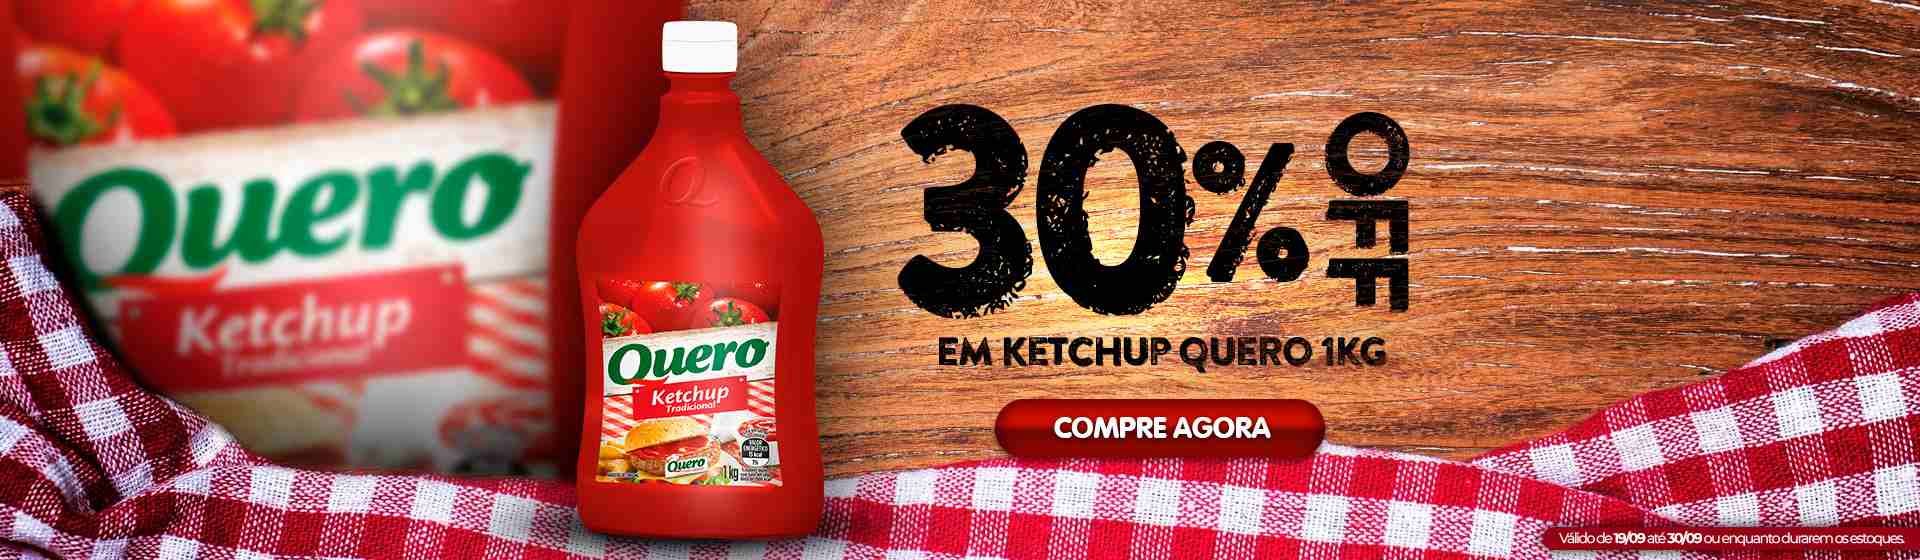 Heinz- 30% de desconto Ketchup Quero 1Kg - 19/09 a 30/09